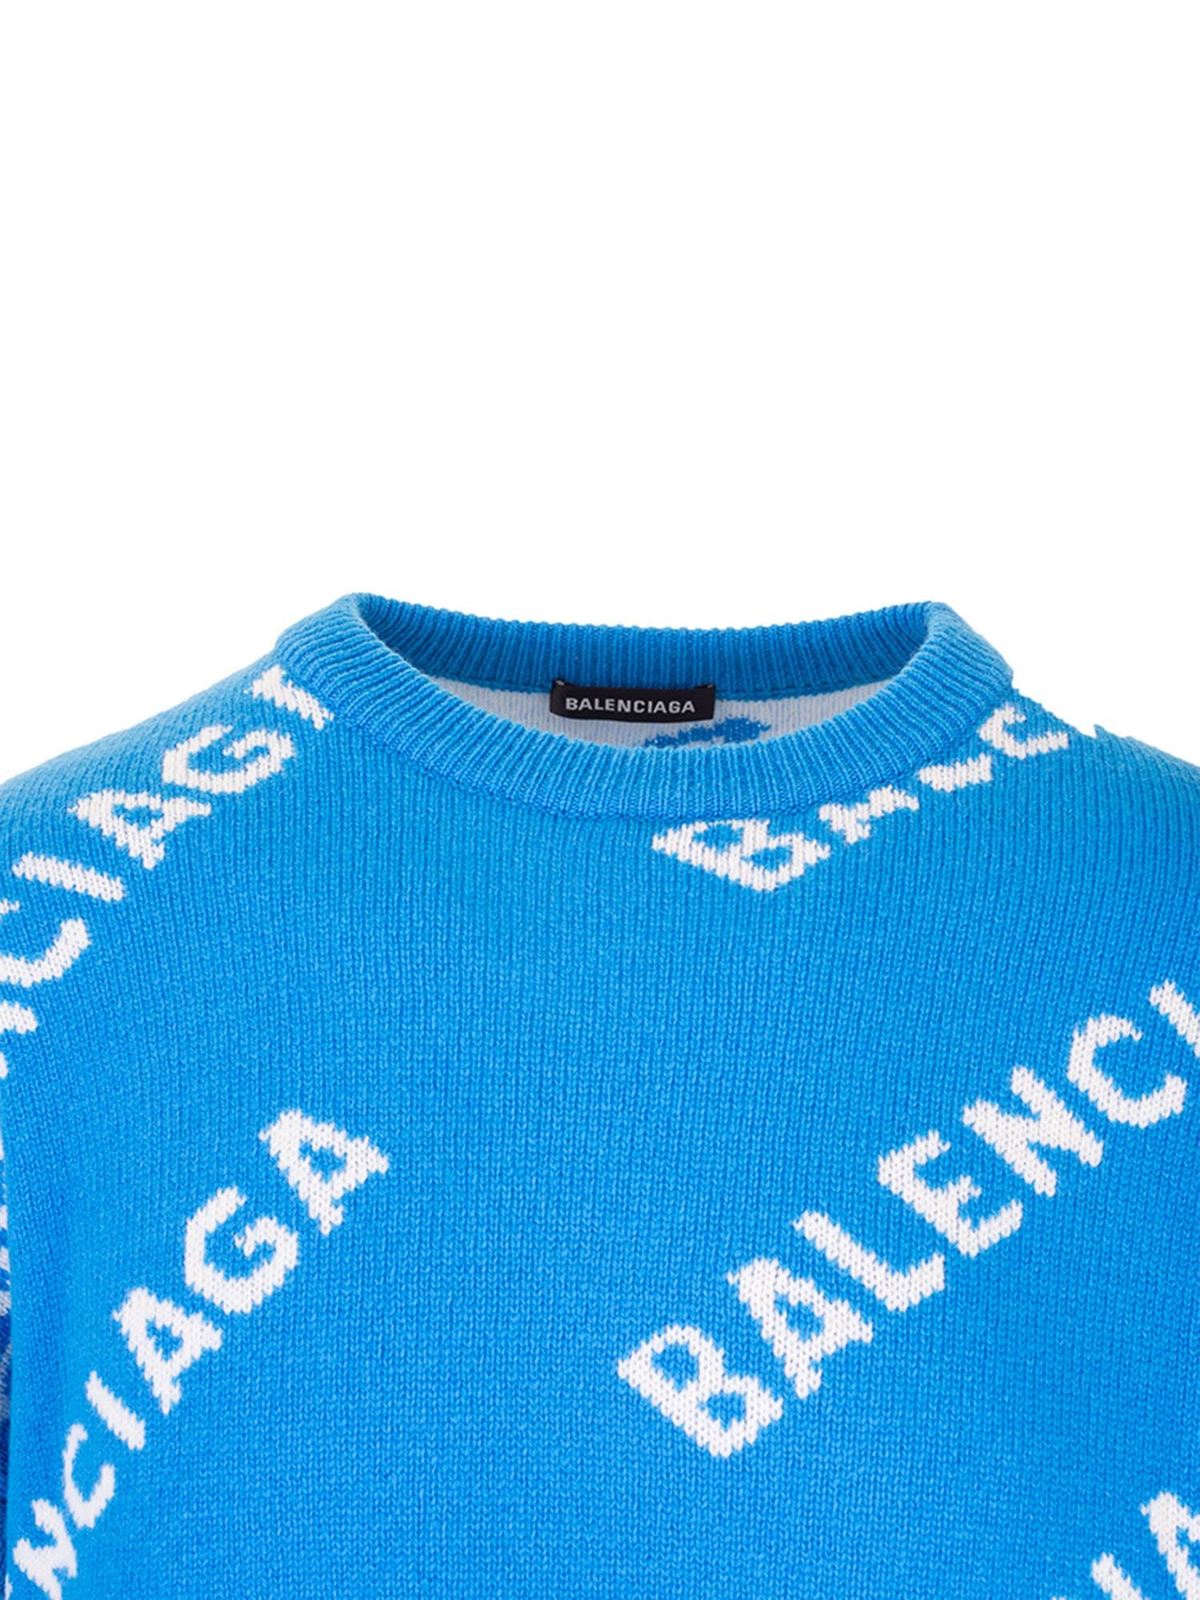 ニットウェア Balenciaga - ニット - ブルー - 623283T15677560